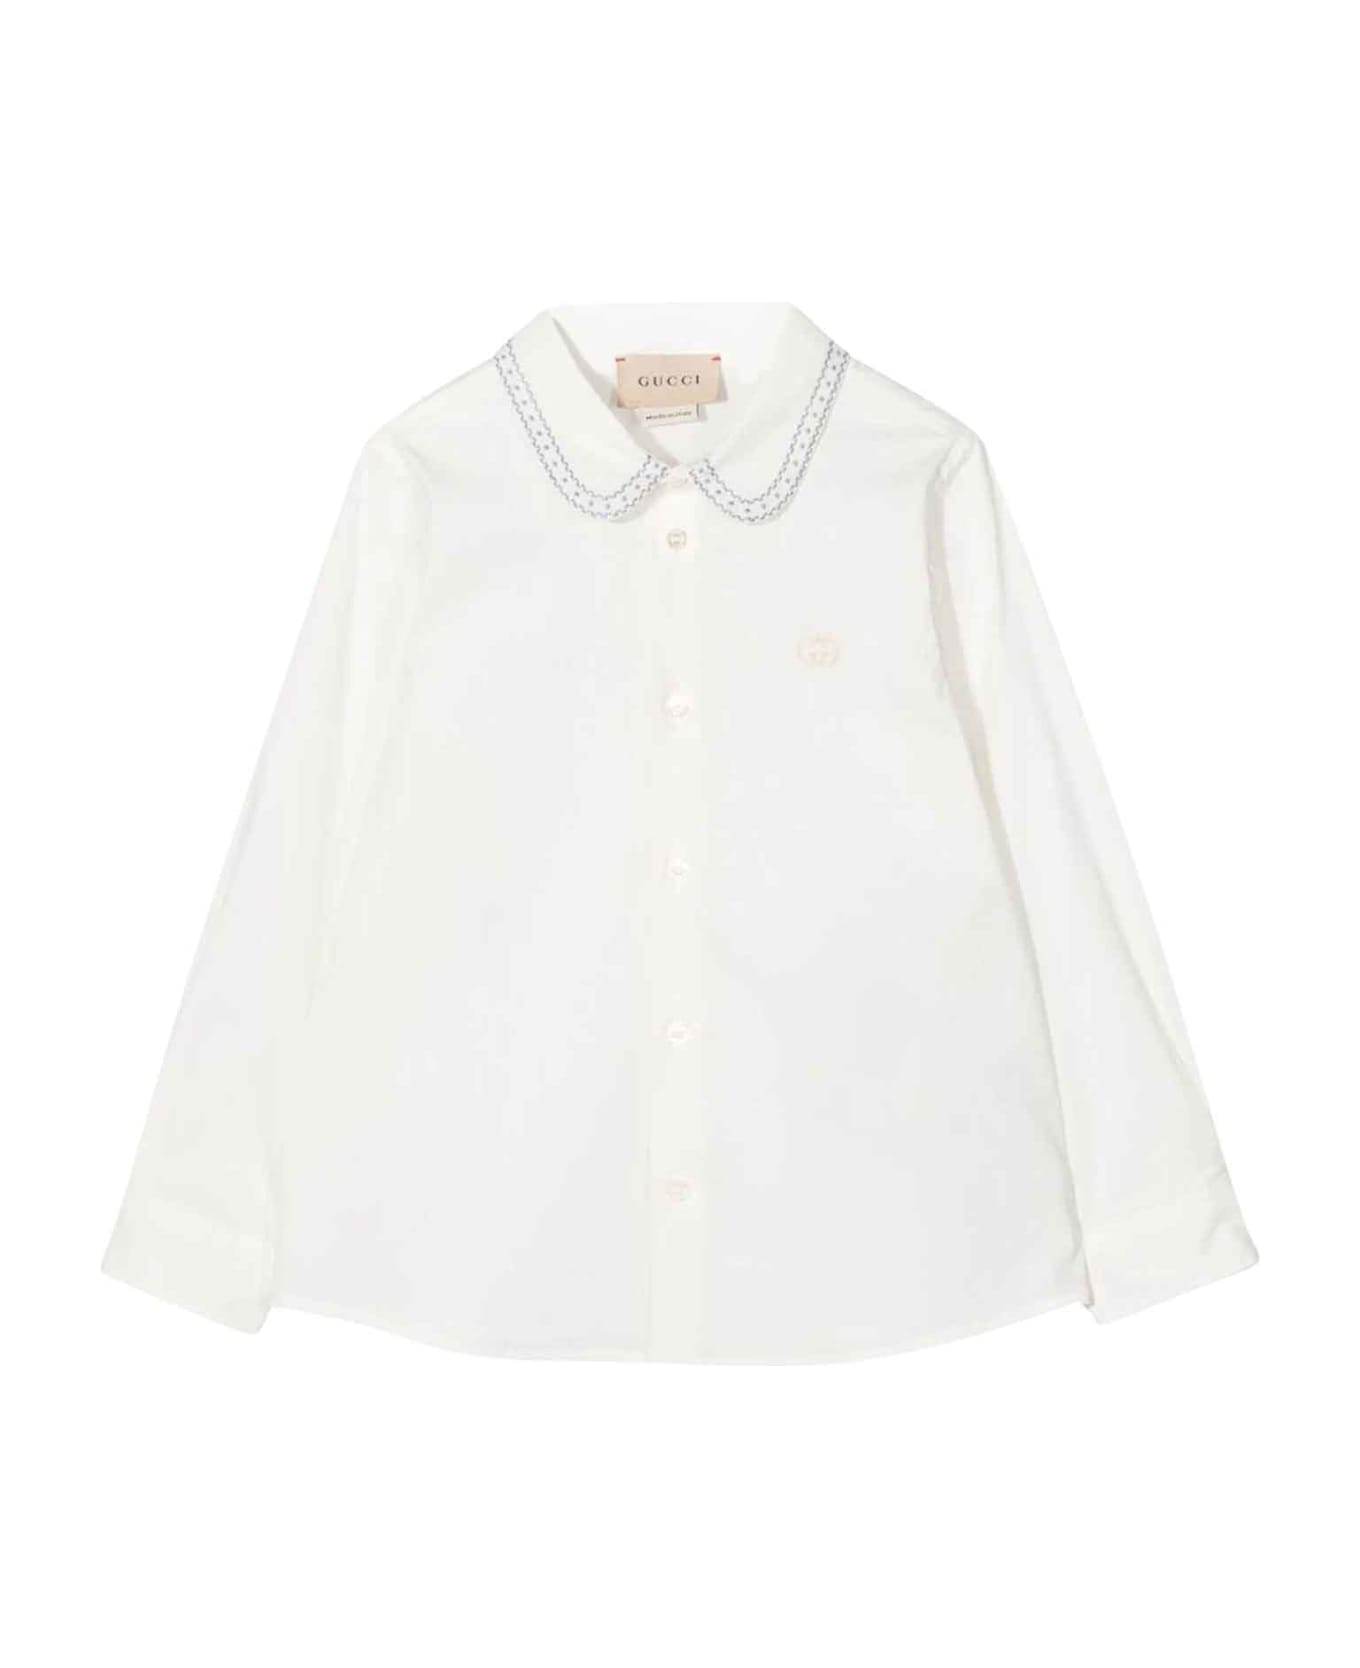 Gucci White Shirt Baby Boy - Soft White Avio シャツ